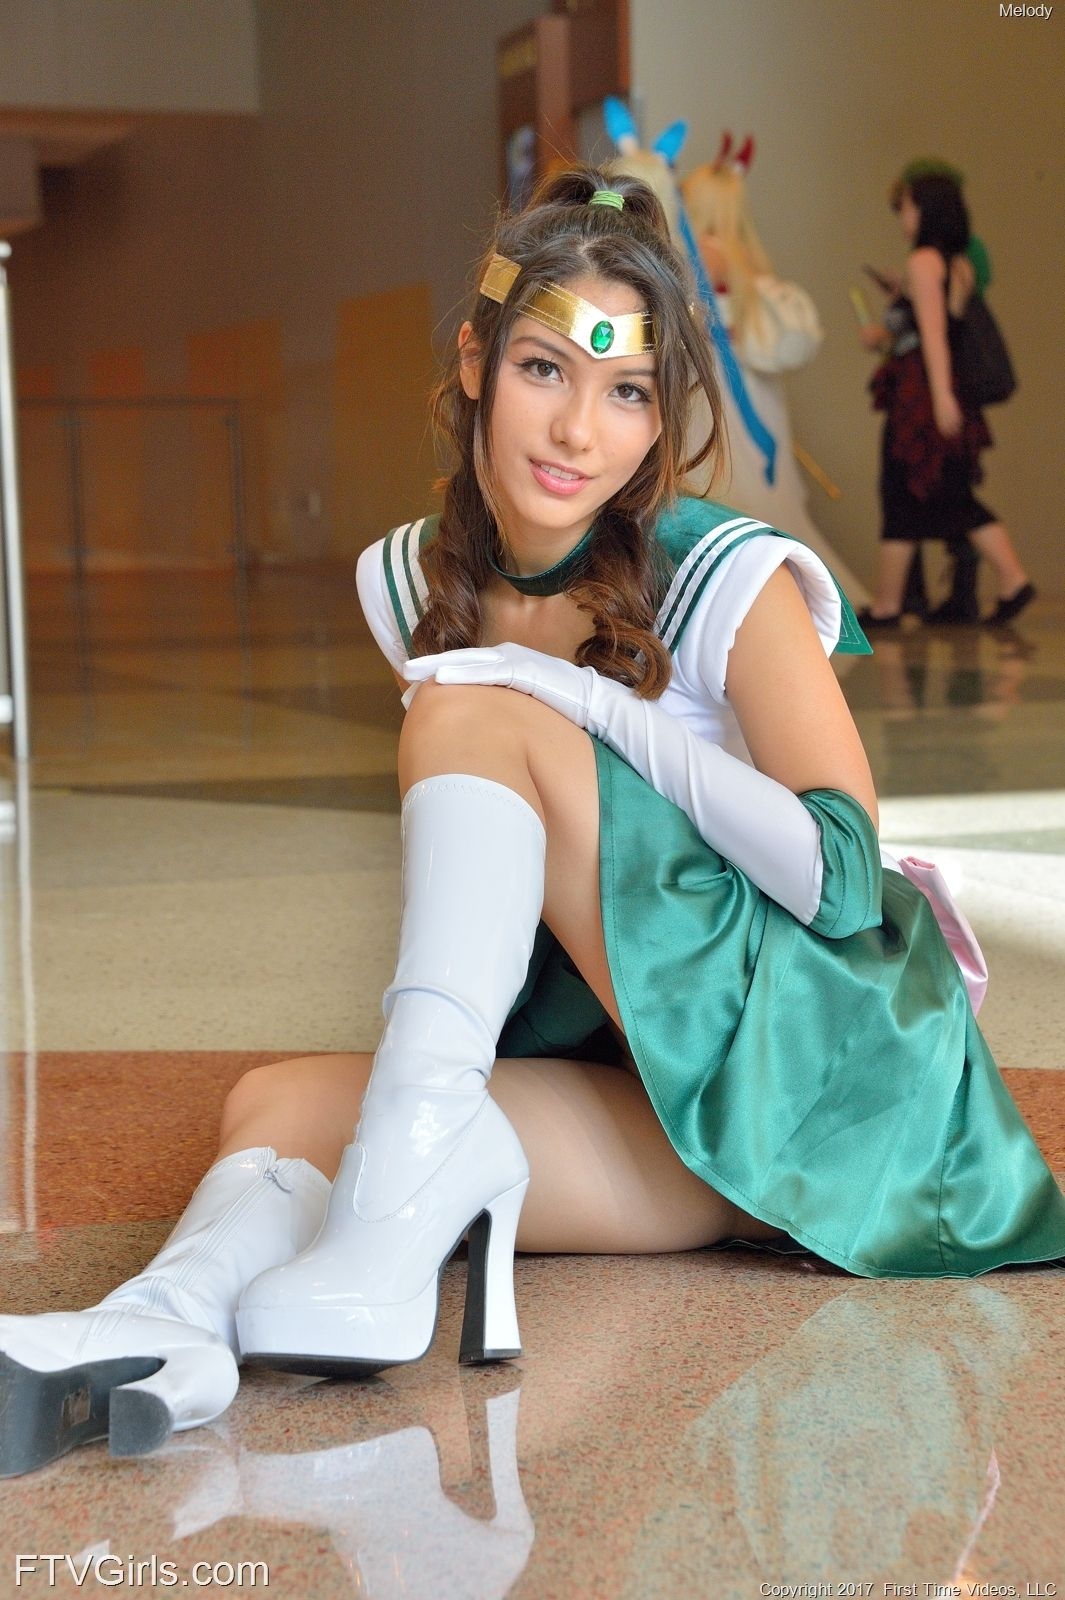 Melody Wylde as Sailor Jupiter 66